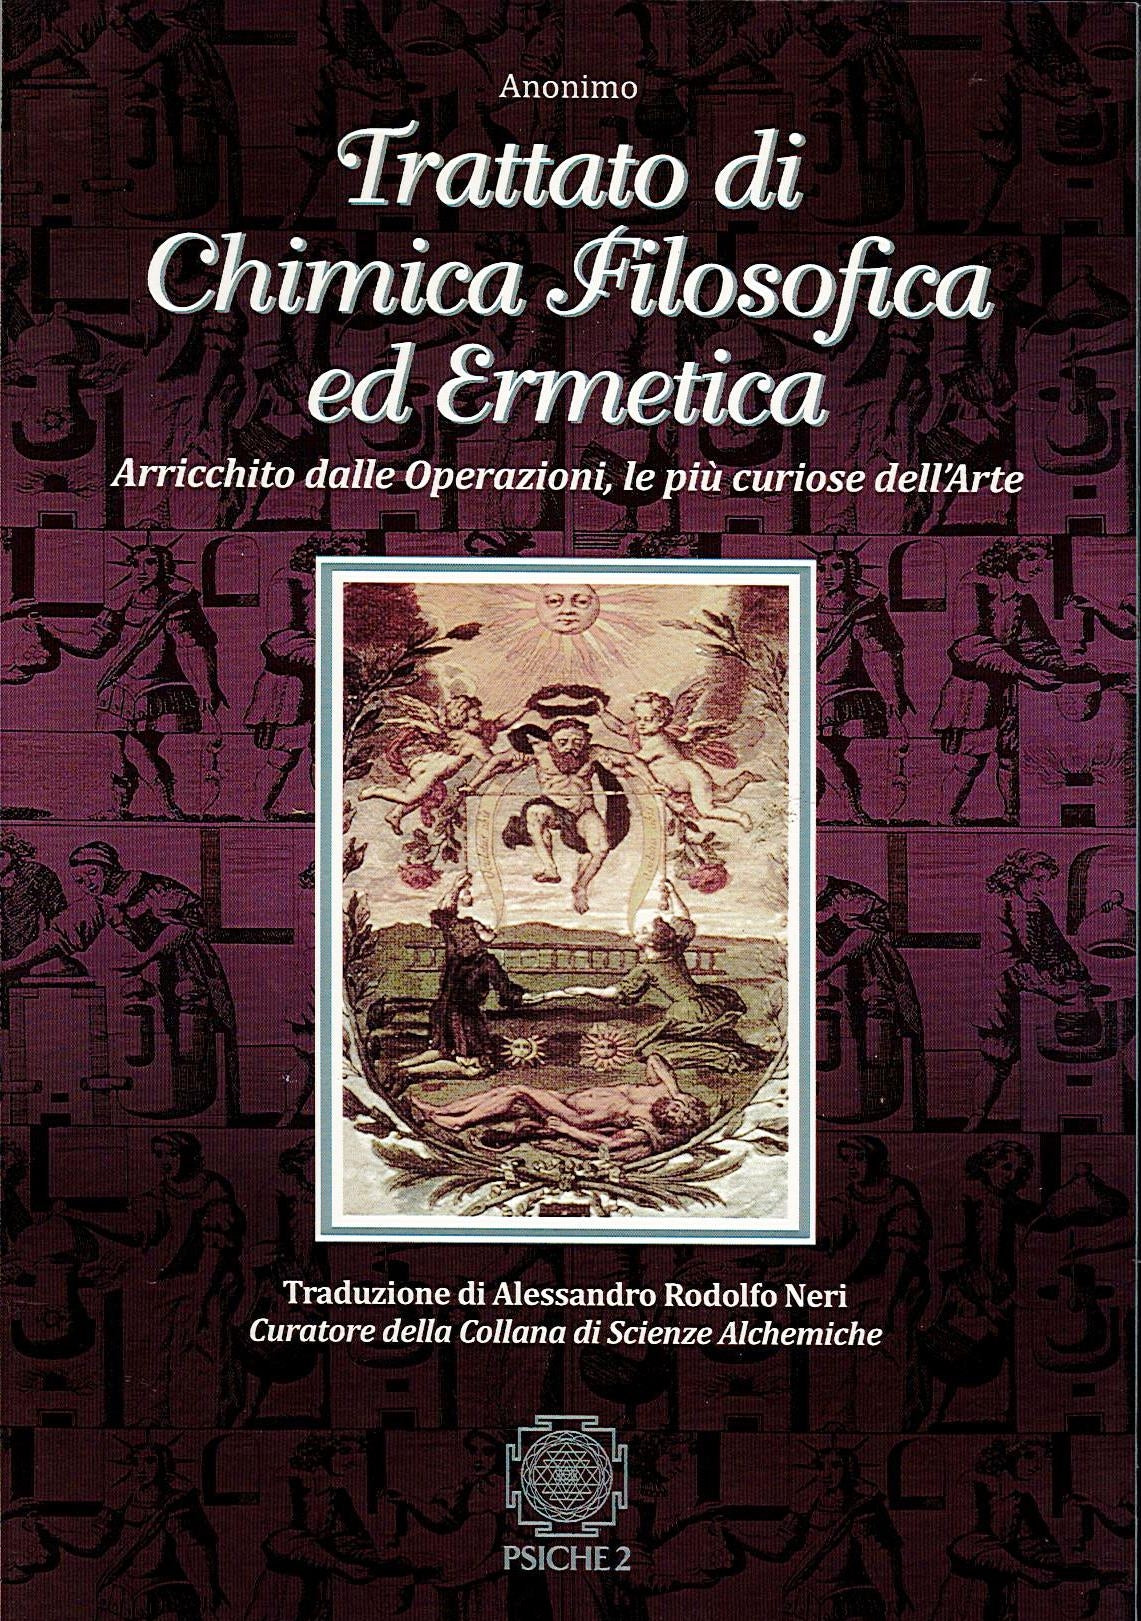 TRATTATO DI CHIMICA FILOSOFICA ED ERMETICA - Anonimo